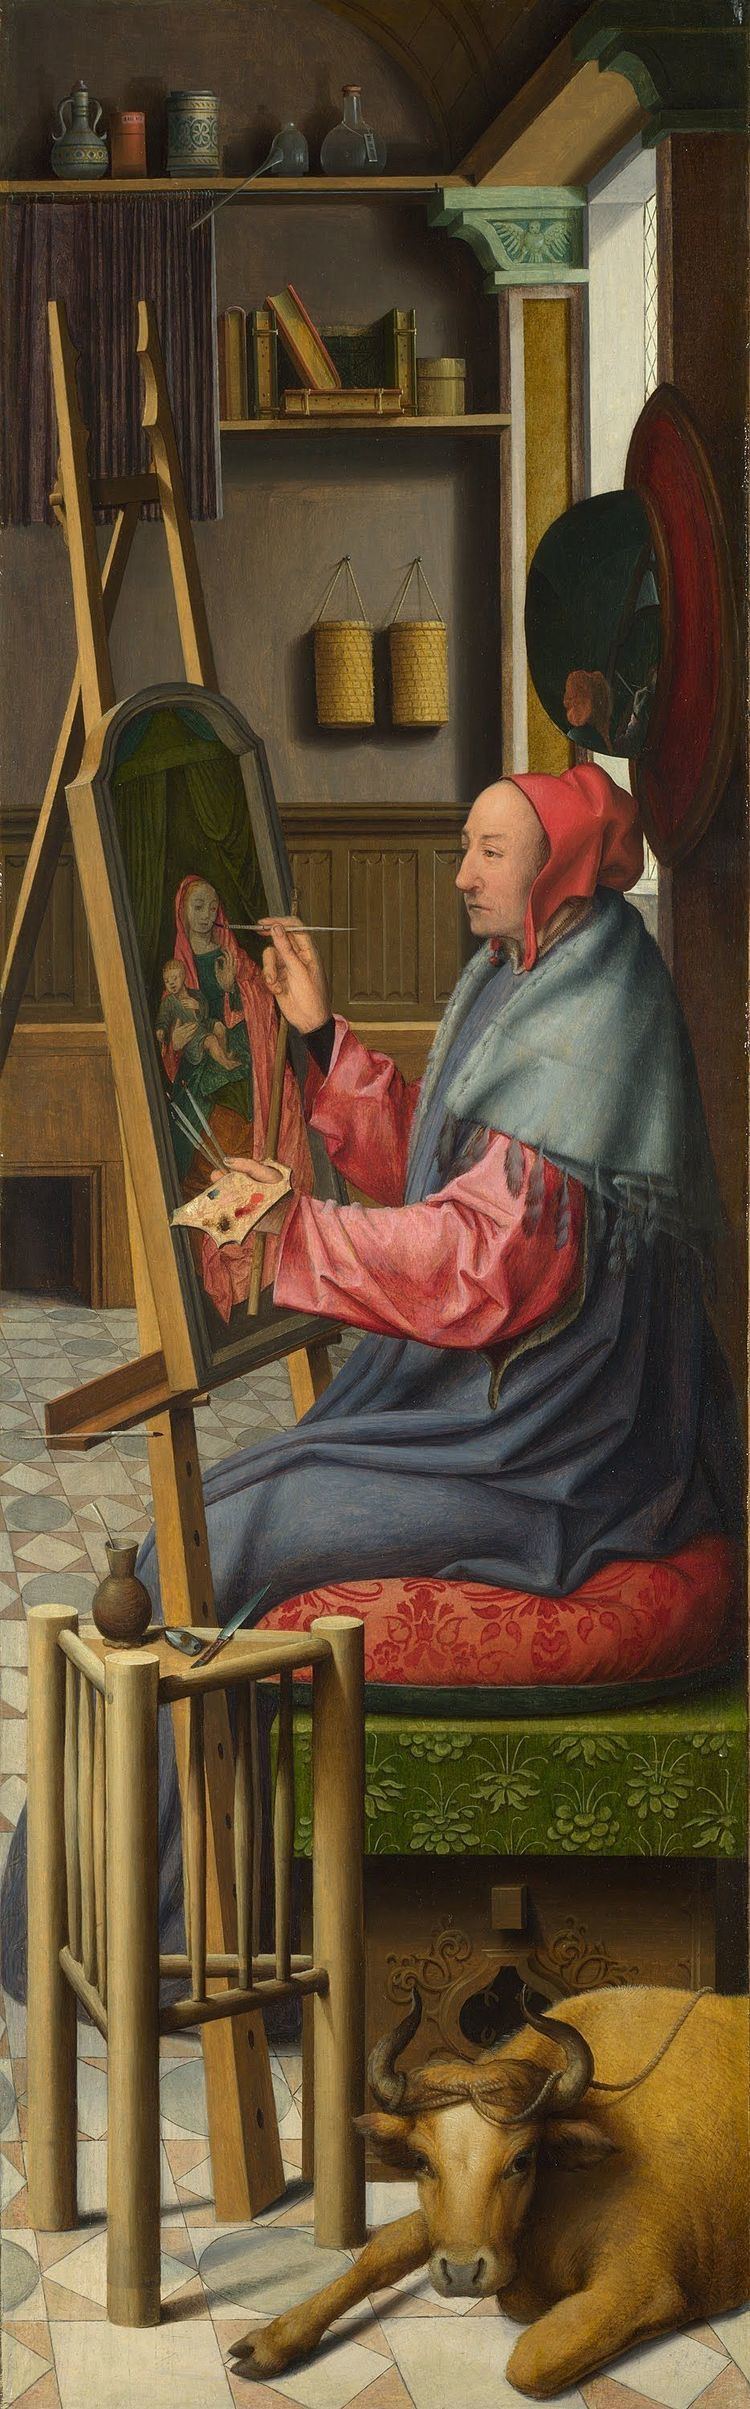 Saint Luke painting the Virgin 1000 images about San Luca St Luke on Pinterest Prayer book